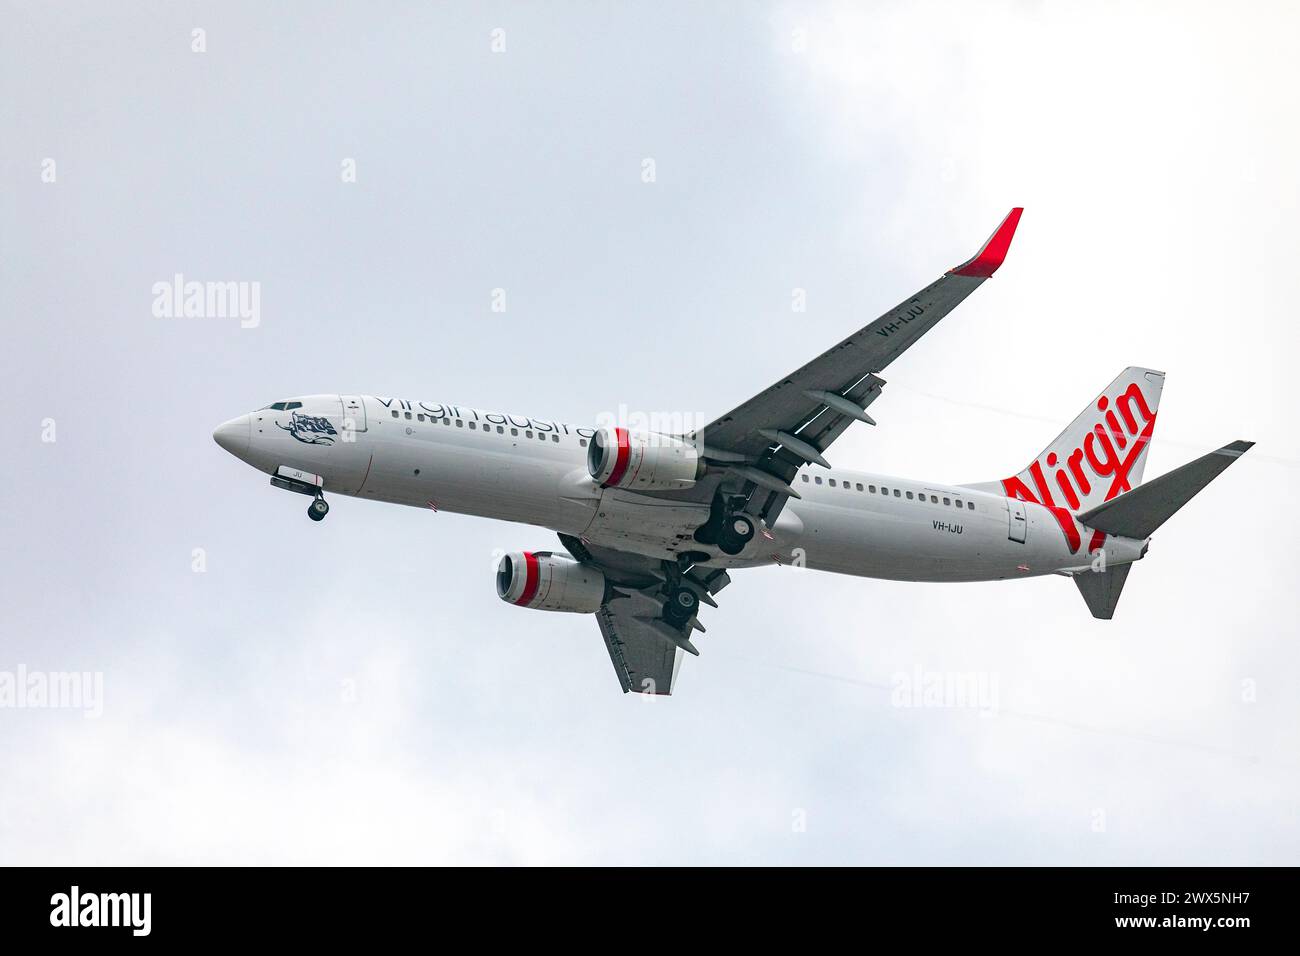 Virgin Australia Flight plane, un Boeing 737, survolant Sydney alors qu'il se dirige vers l'aéroport de Sydney Kingsford smith, Australie, 2024 Banque D'Images